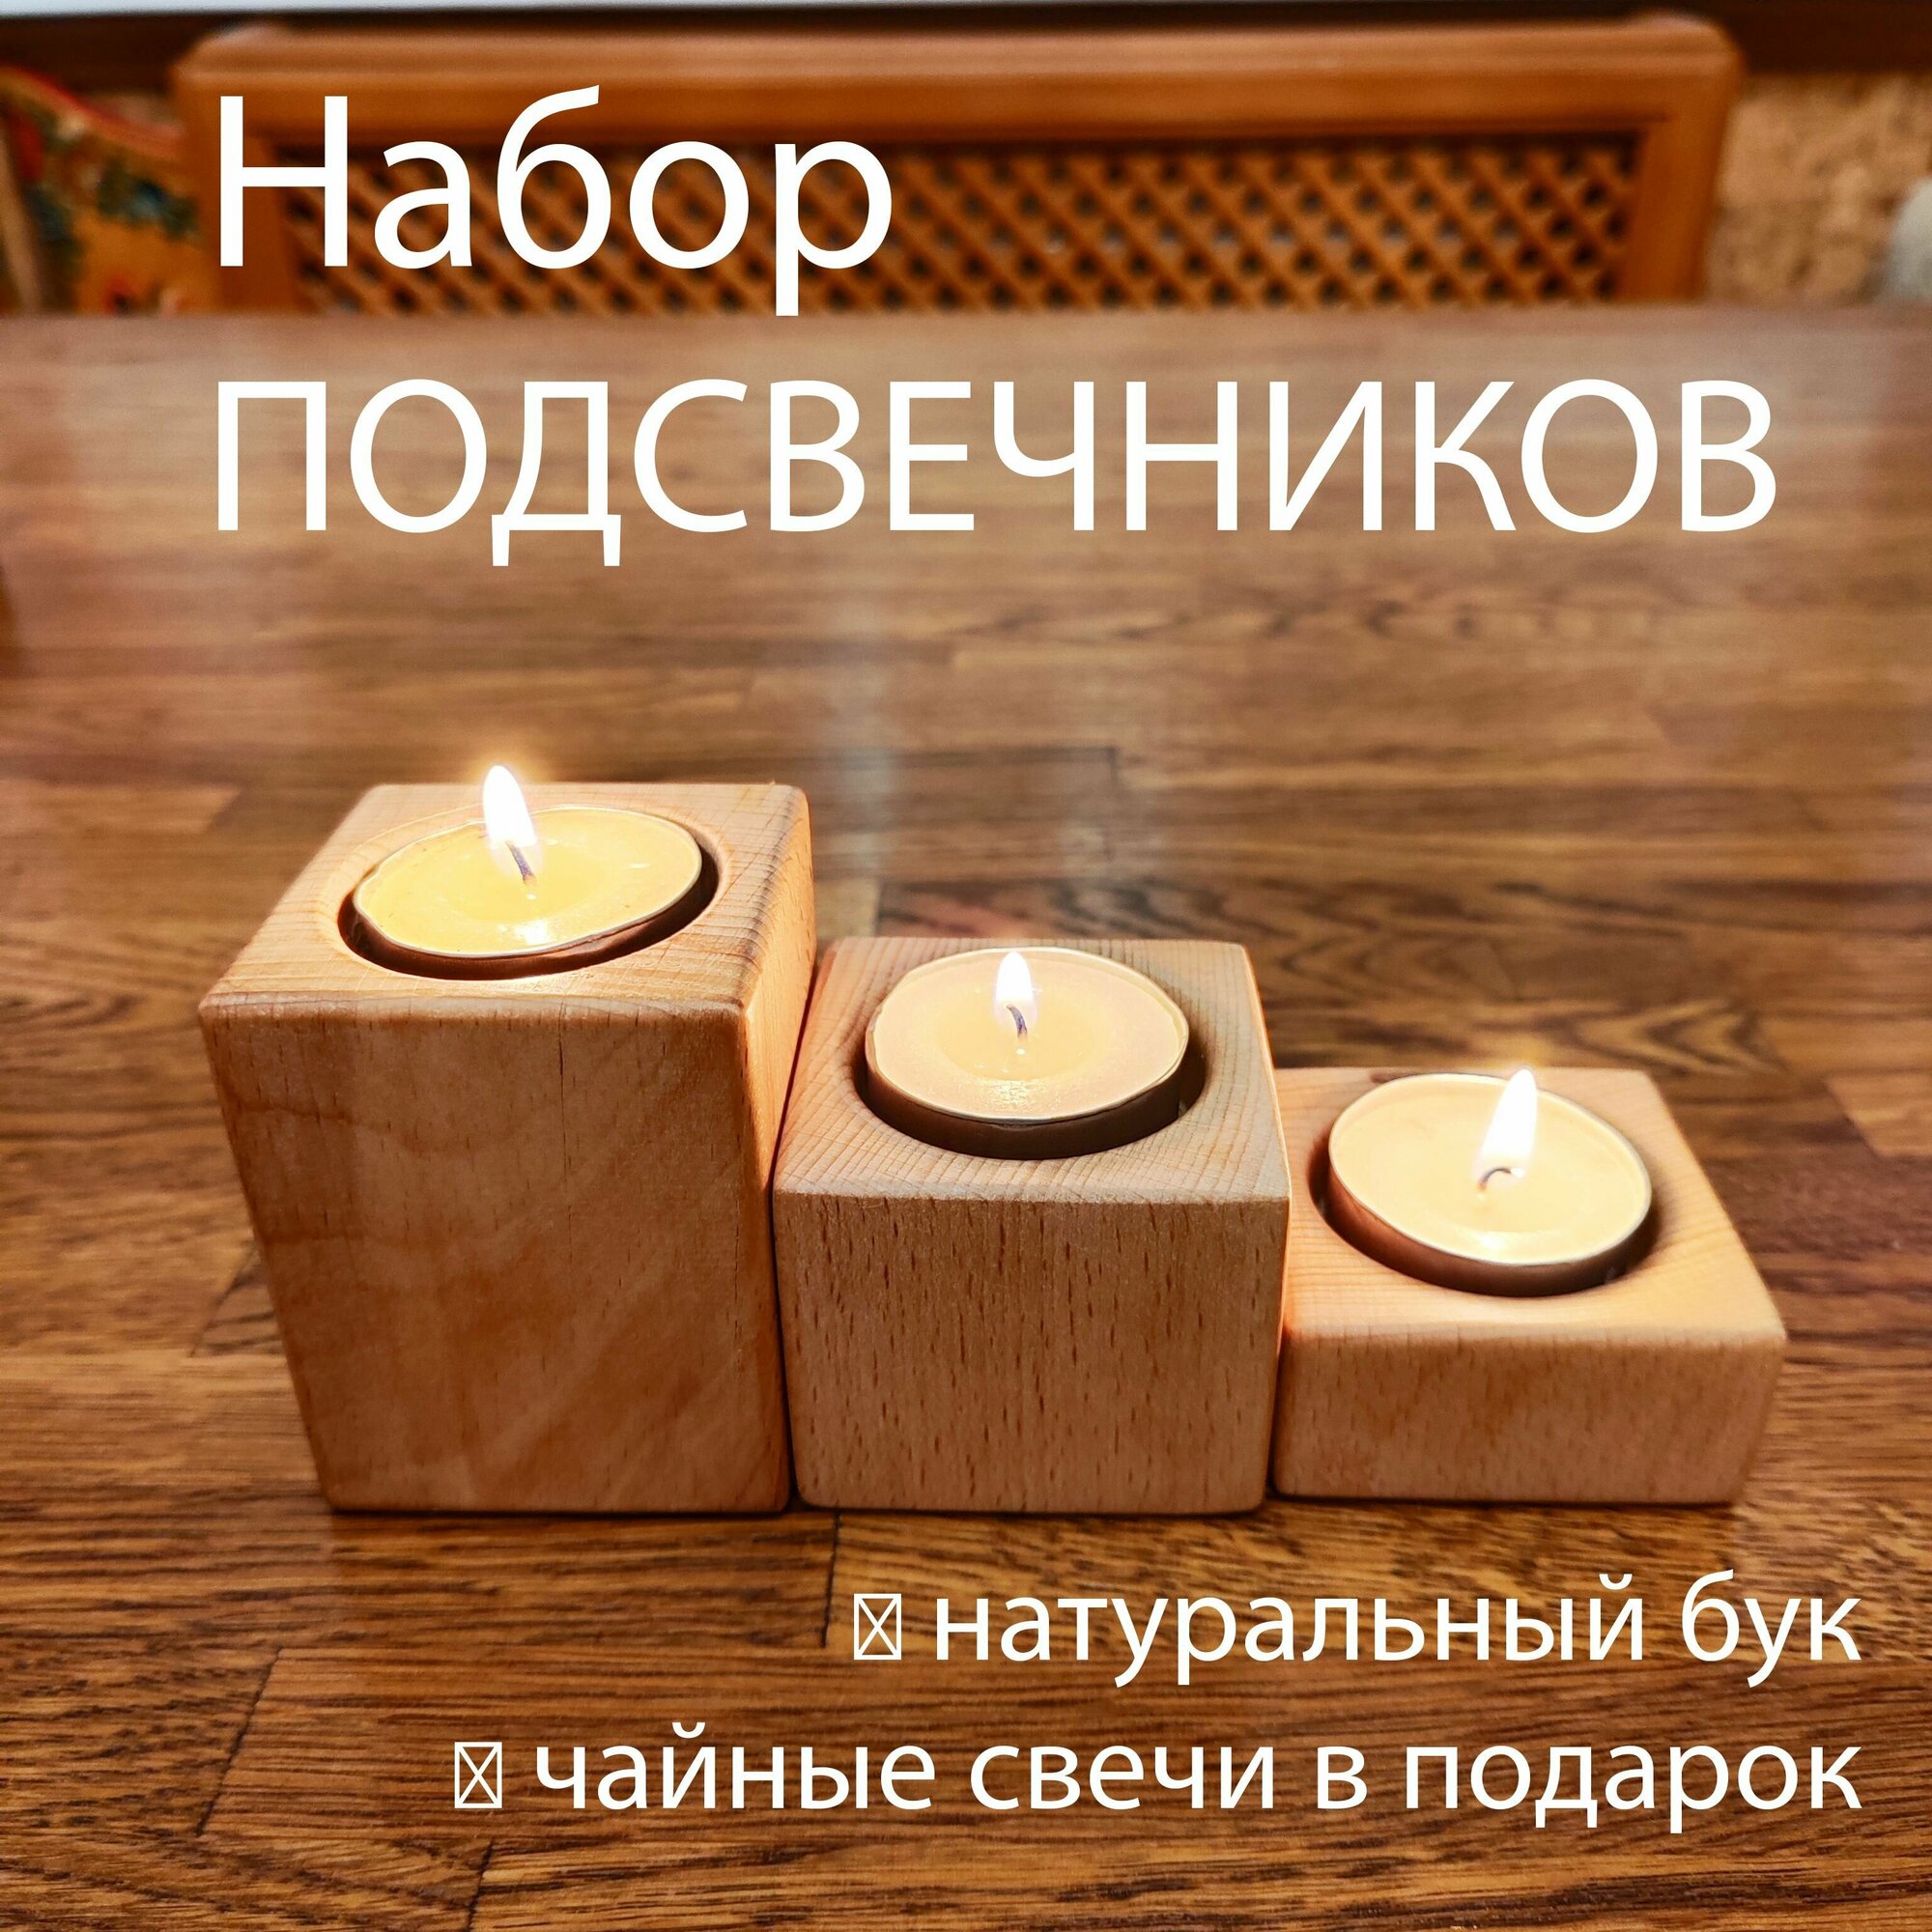 Набор подсвечников для 3х свечей /Массив бука/ Натуральный